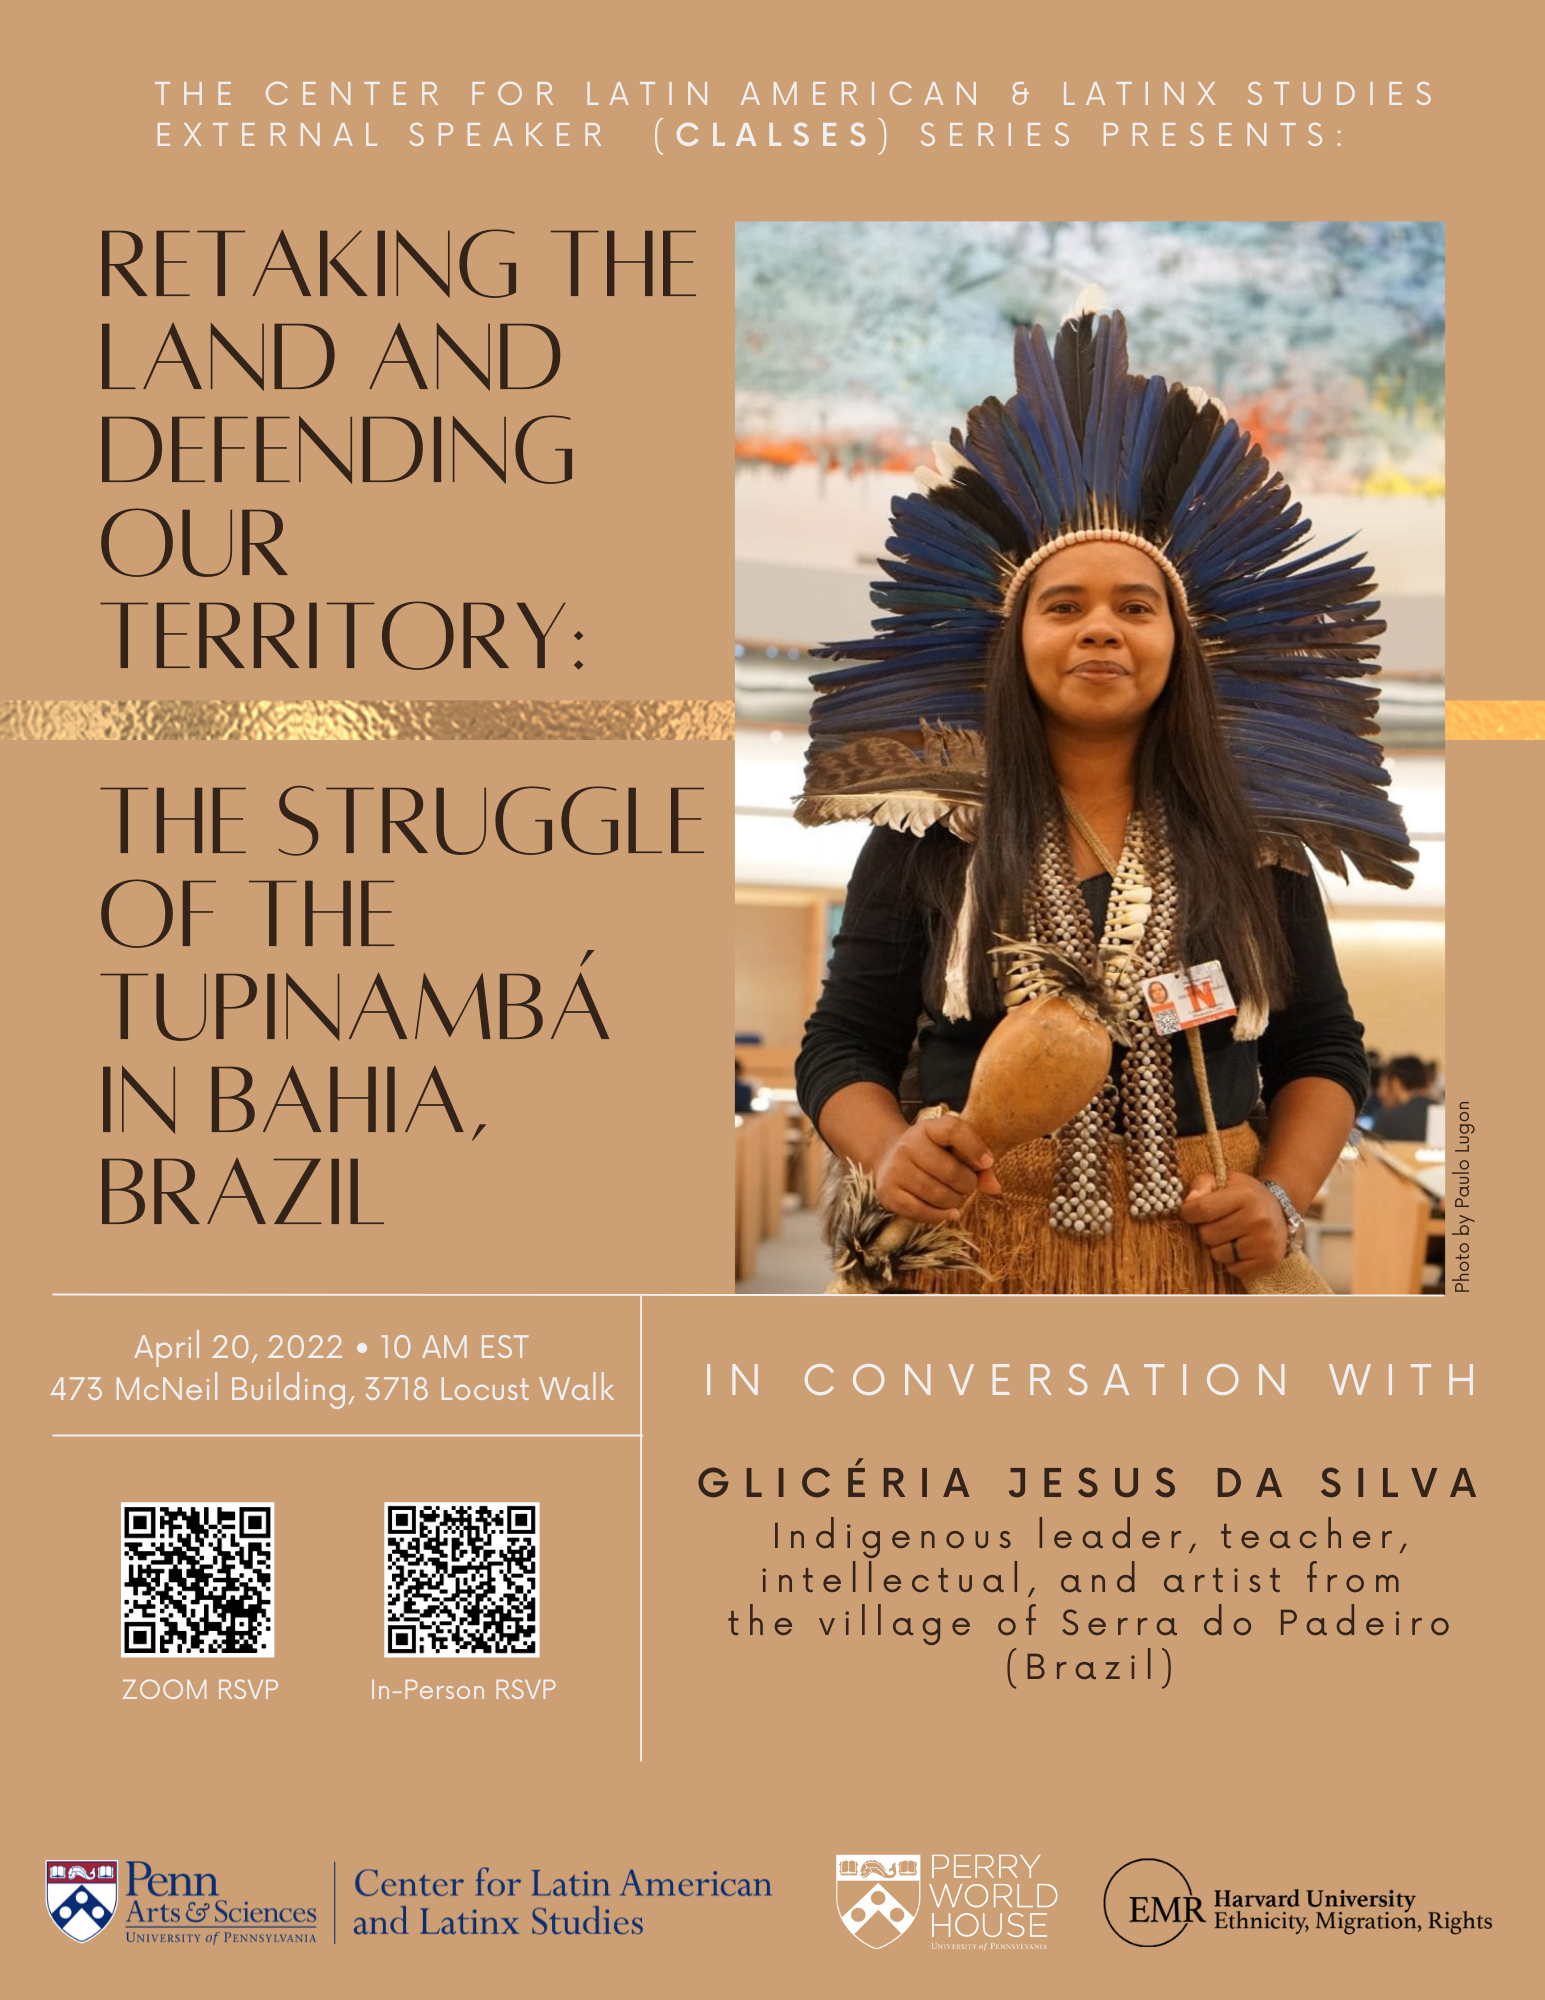 Glicéria Jesus da Silva, Indigenous leader, teacher, intellectual and artist